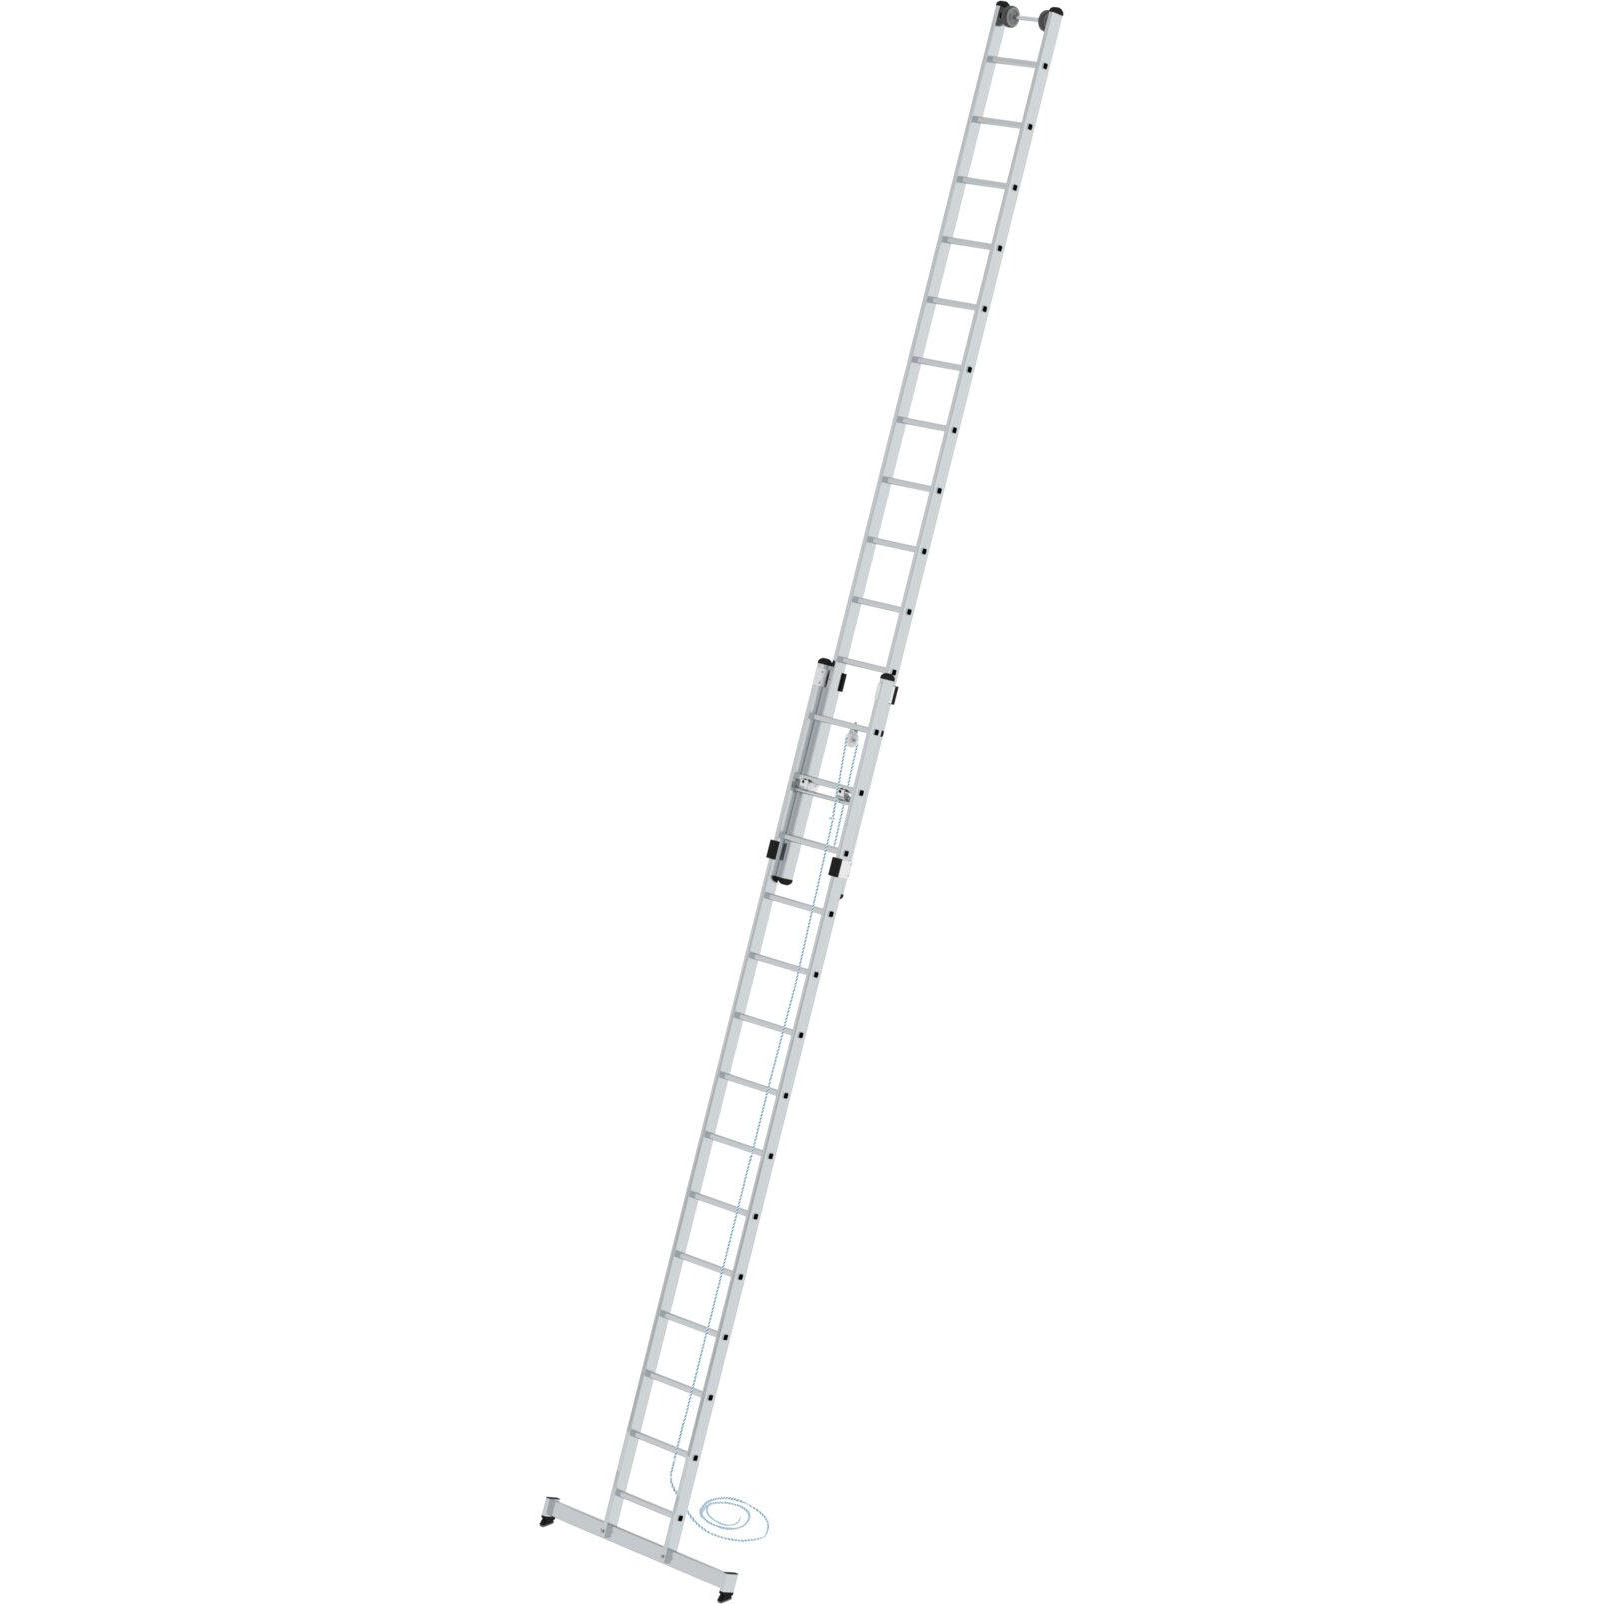 Двухсекционная лестница 2 x 14 выдвижная тросом со стабилизатором «nivello»® Munk 021314